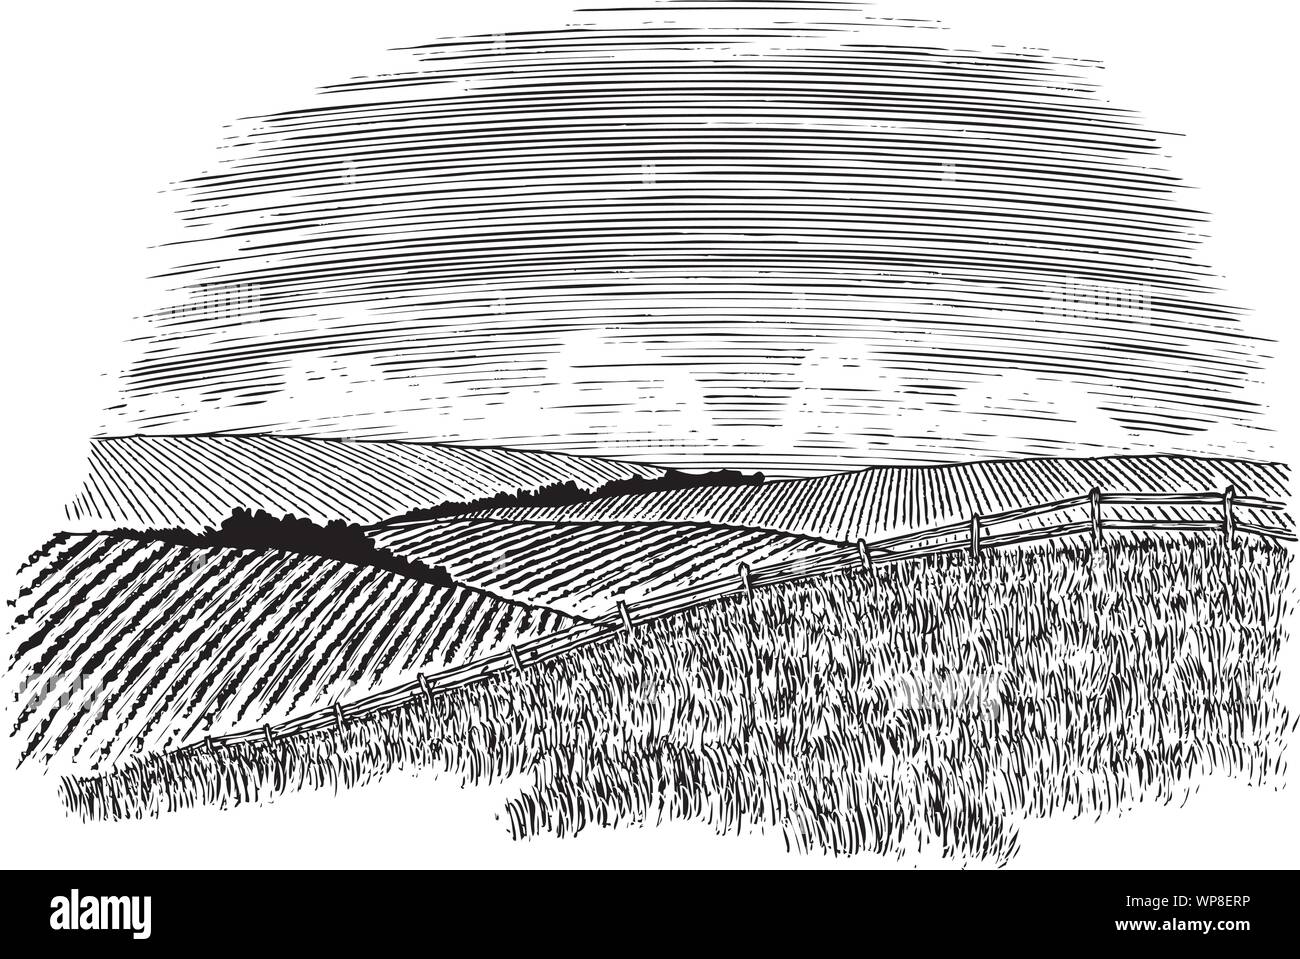 Xilografia illustrazione di un paesaggio rurale scena con campi di colture in background. Illustrazione Vettoriale